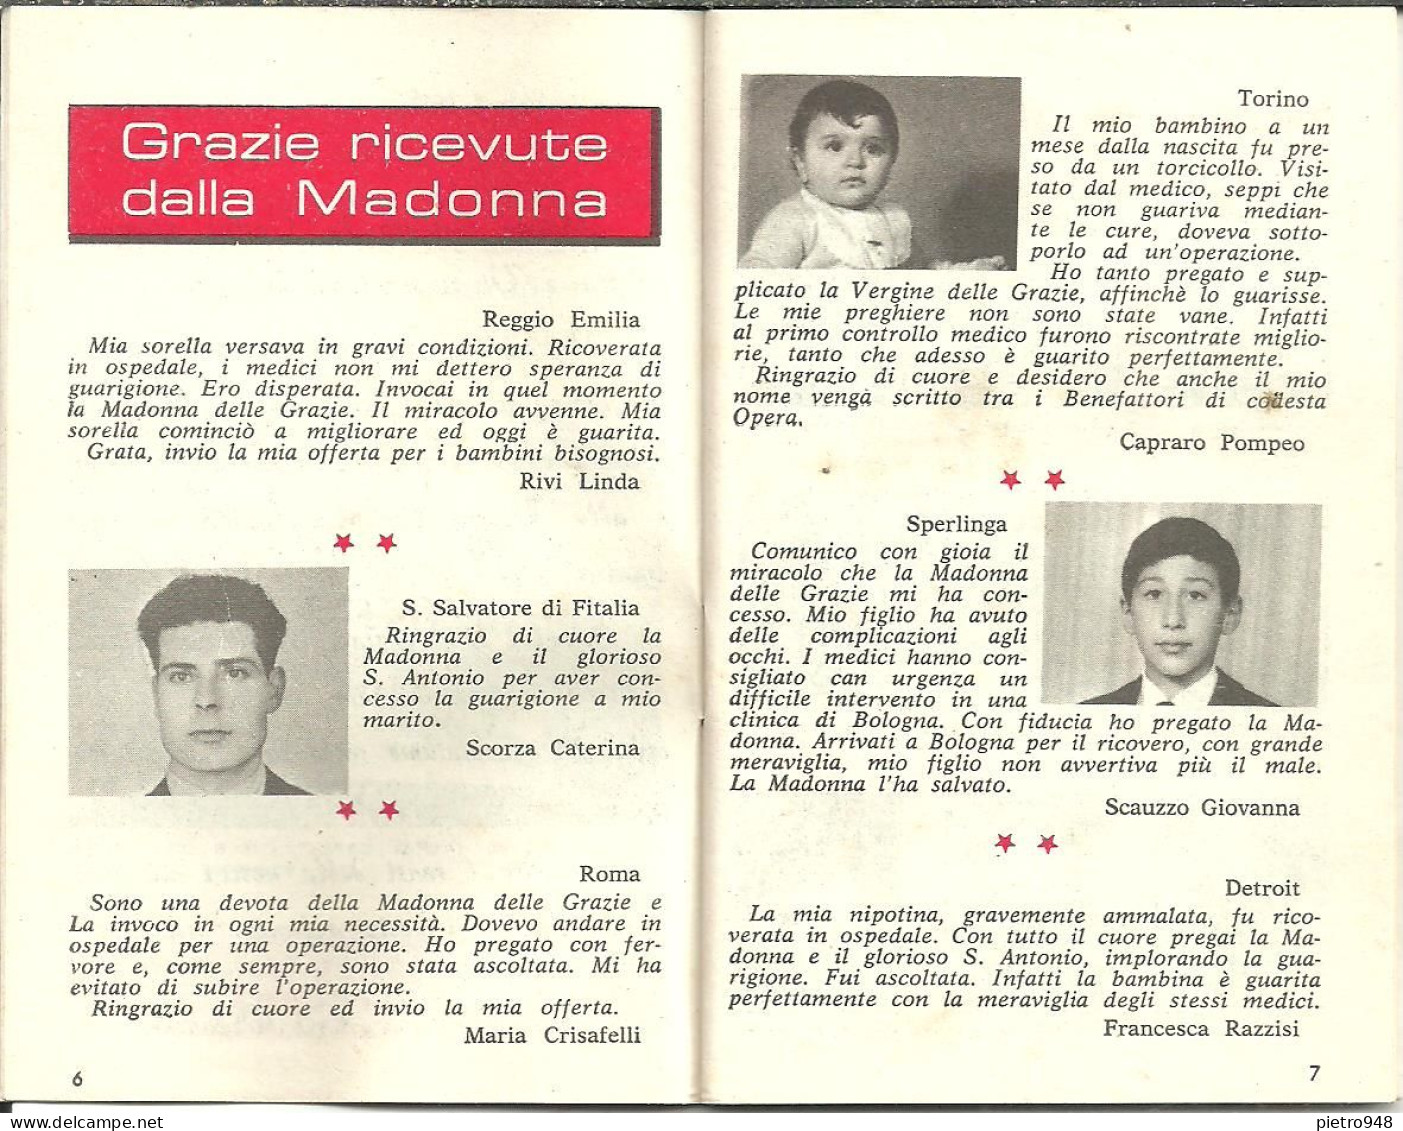 Libro (Libretto) Religioso "Opera Madonna Delle Grazie E Sant'Antonio" Corato (Bari), Agendina 1970 - Religion